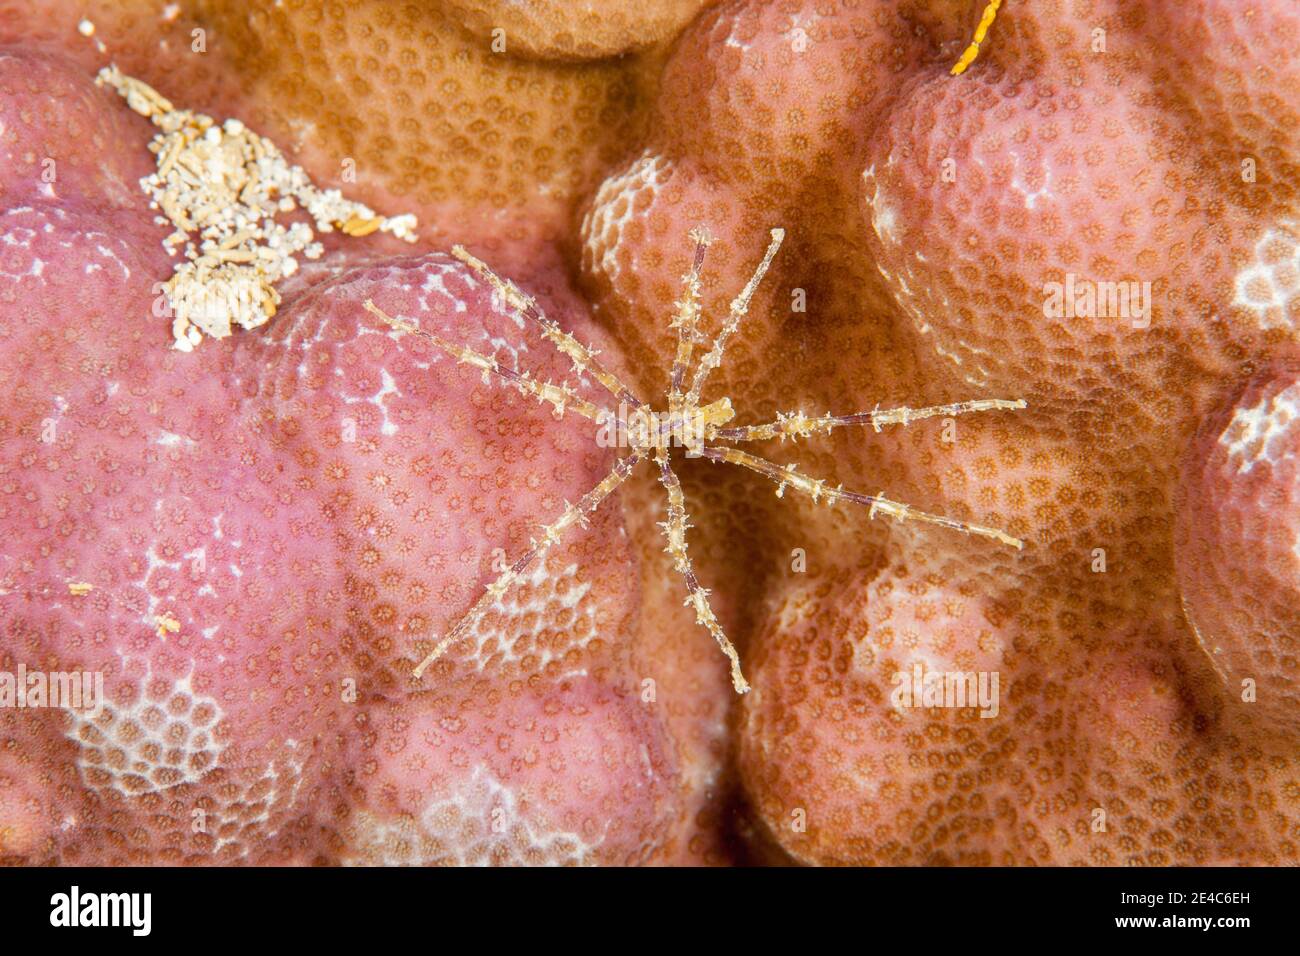 Eine bunte Pyncnogonid, auch bekannt als eine Seespinne, Fidschi. Diese sind in Ozeanen auf der ganzen Welt zu finden. Es gibt über 1,300 bekannte Arten. Stockfoto